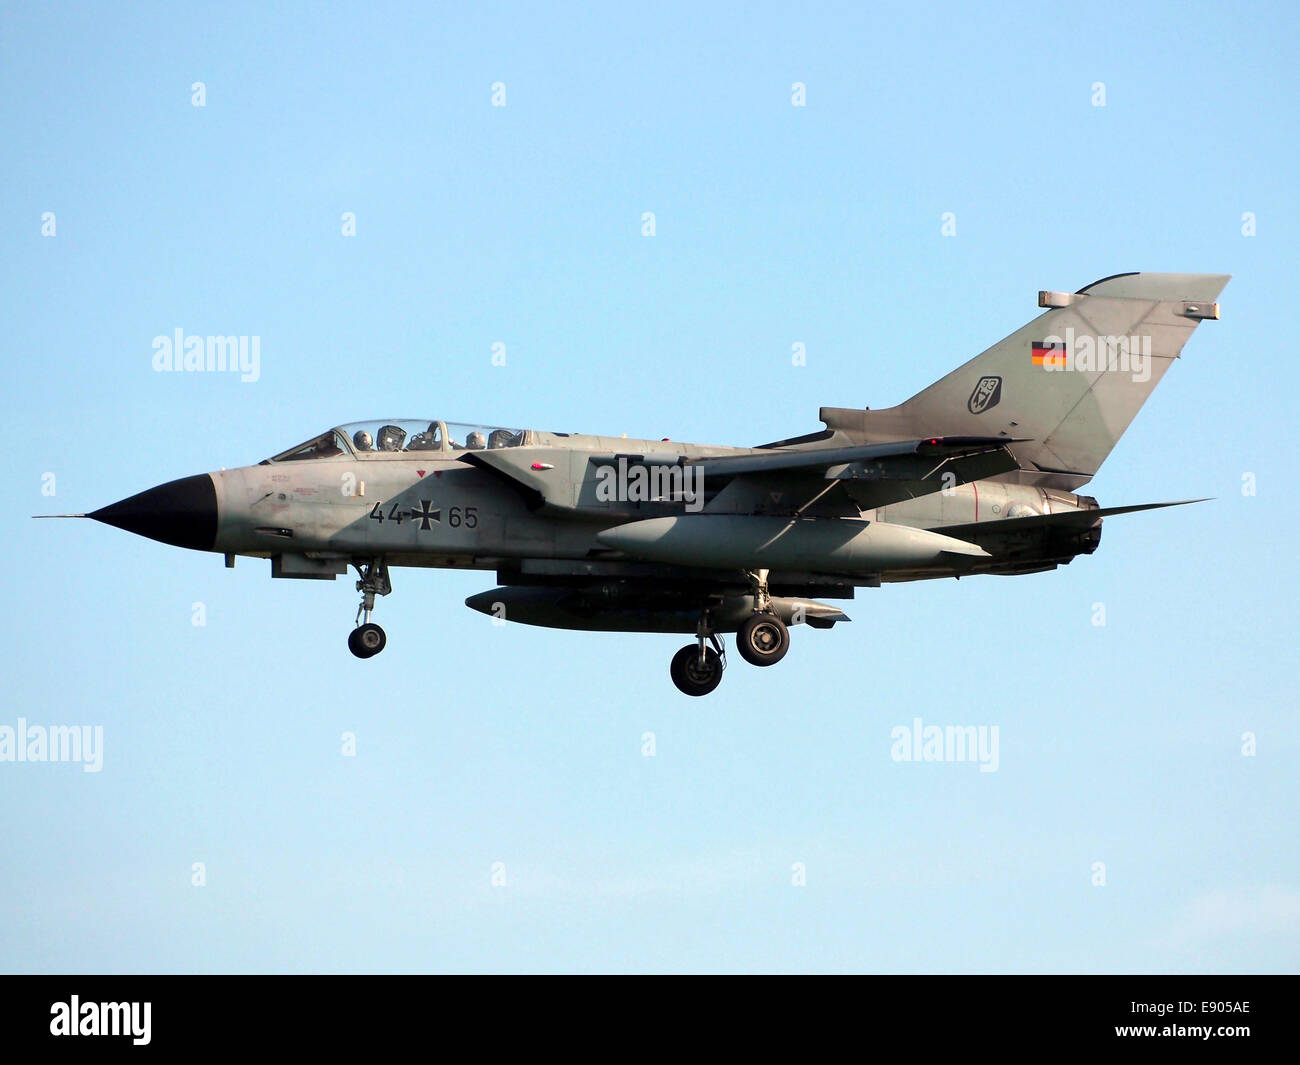 44 65 Panavia Tornado landing at Buchel Air Base, Germany Stock Photo